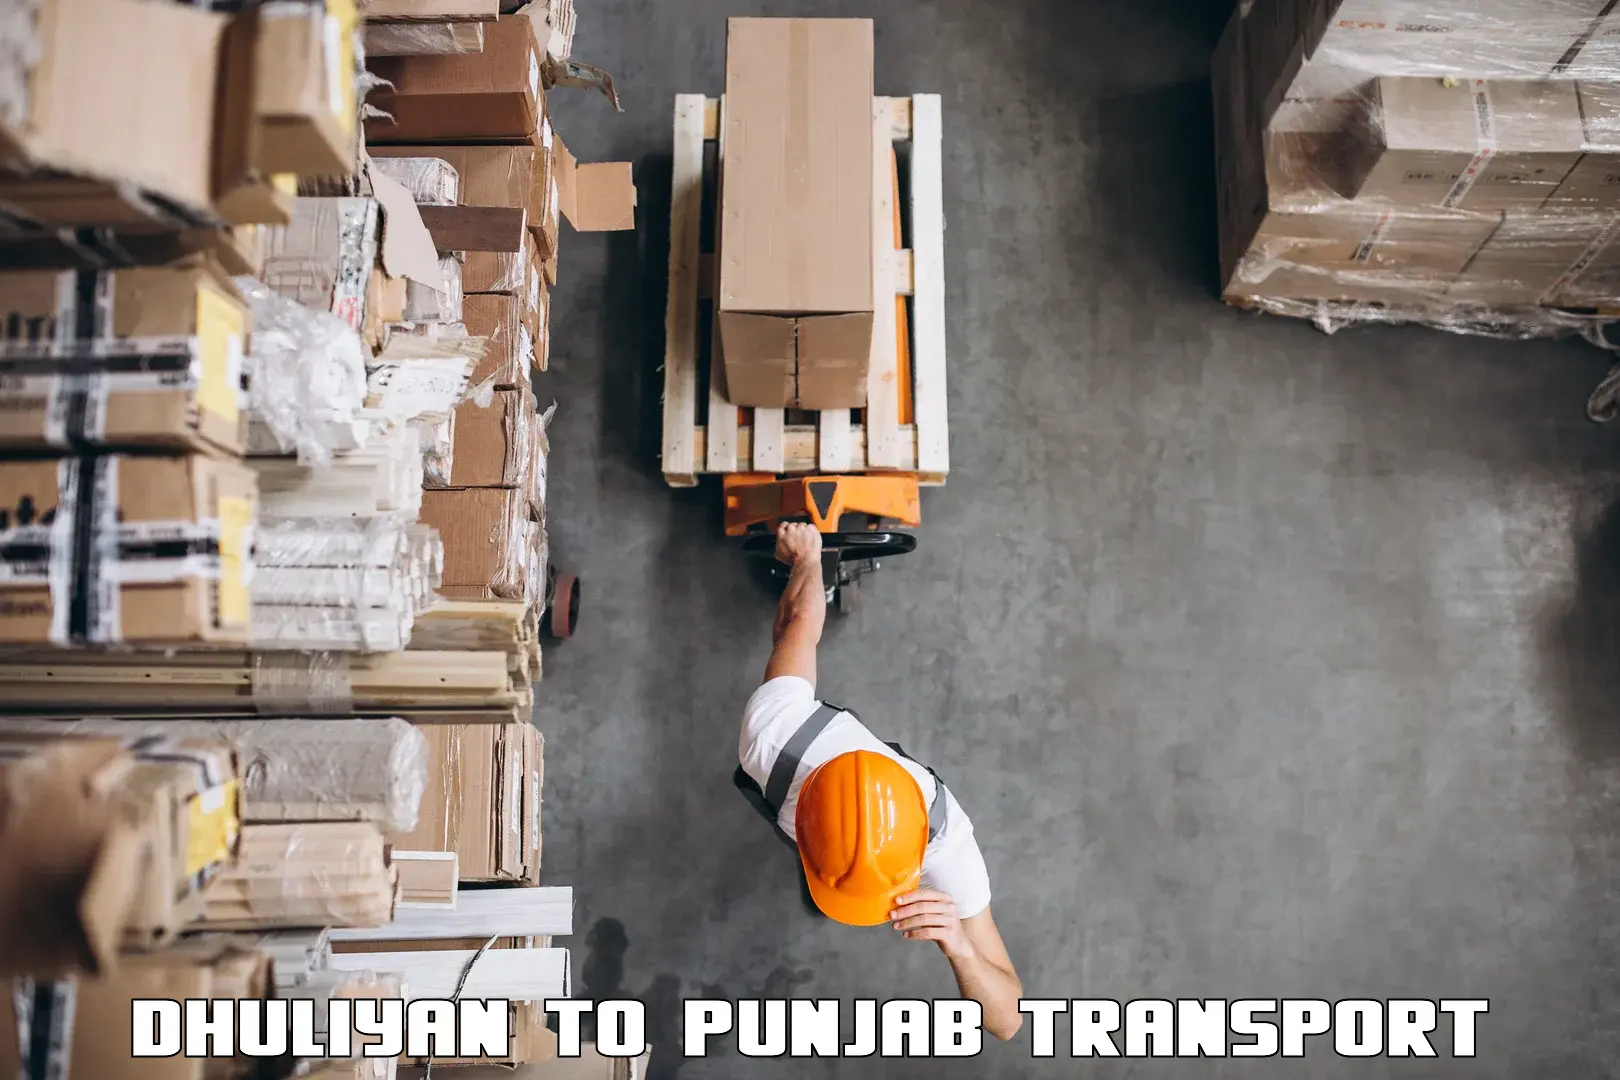 Nearby transport service Dhuliyan to Punjab